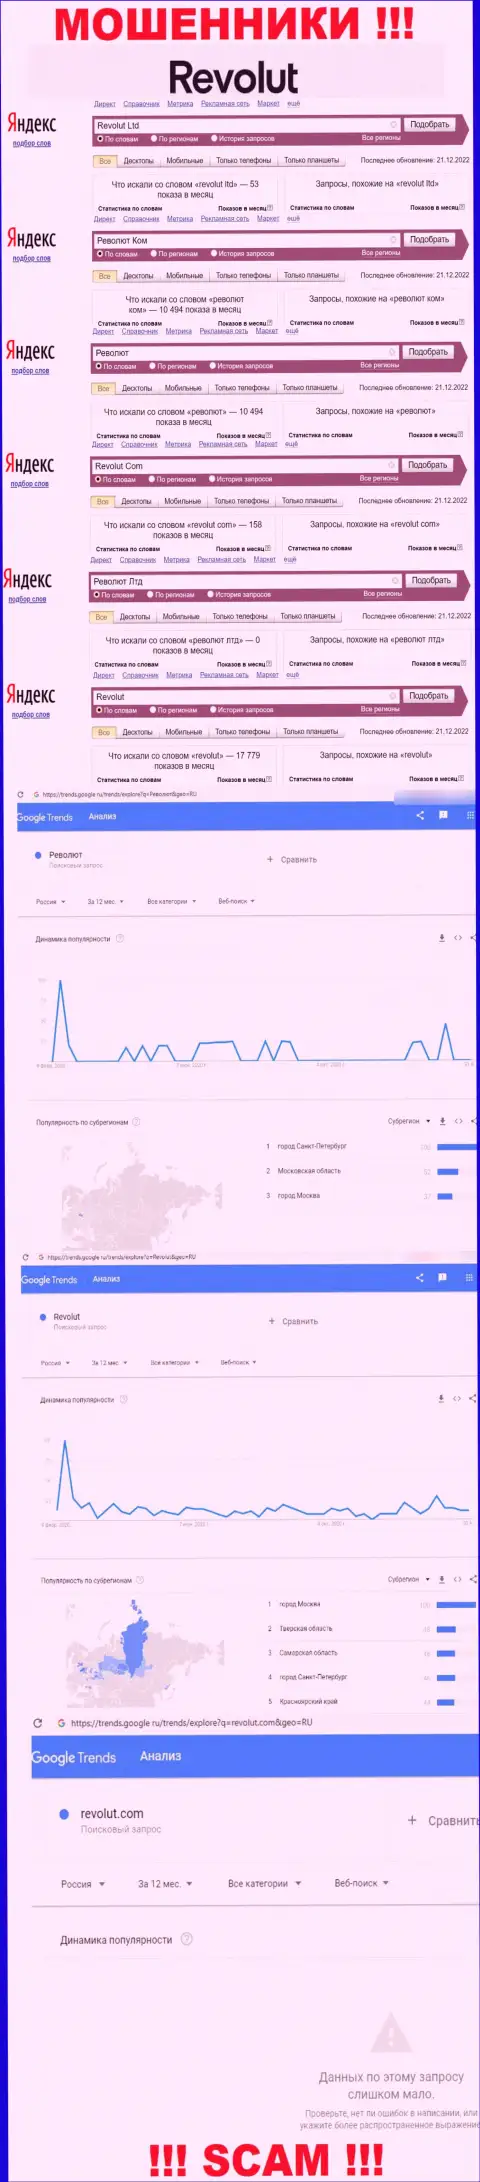 Статистические показатели о запросах в поисковиках глобальной сети интернет сведений о организации Revolut